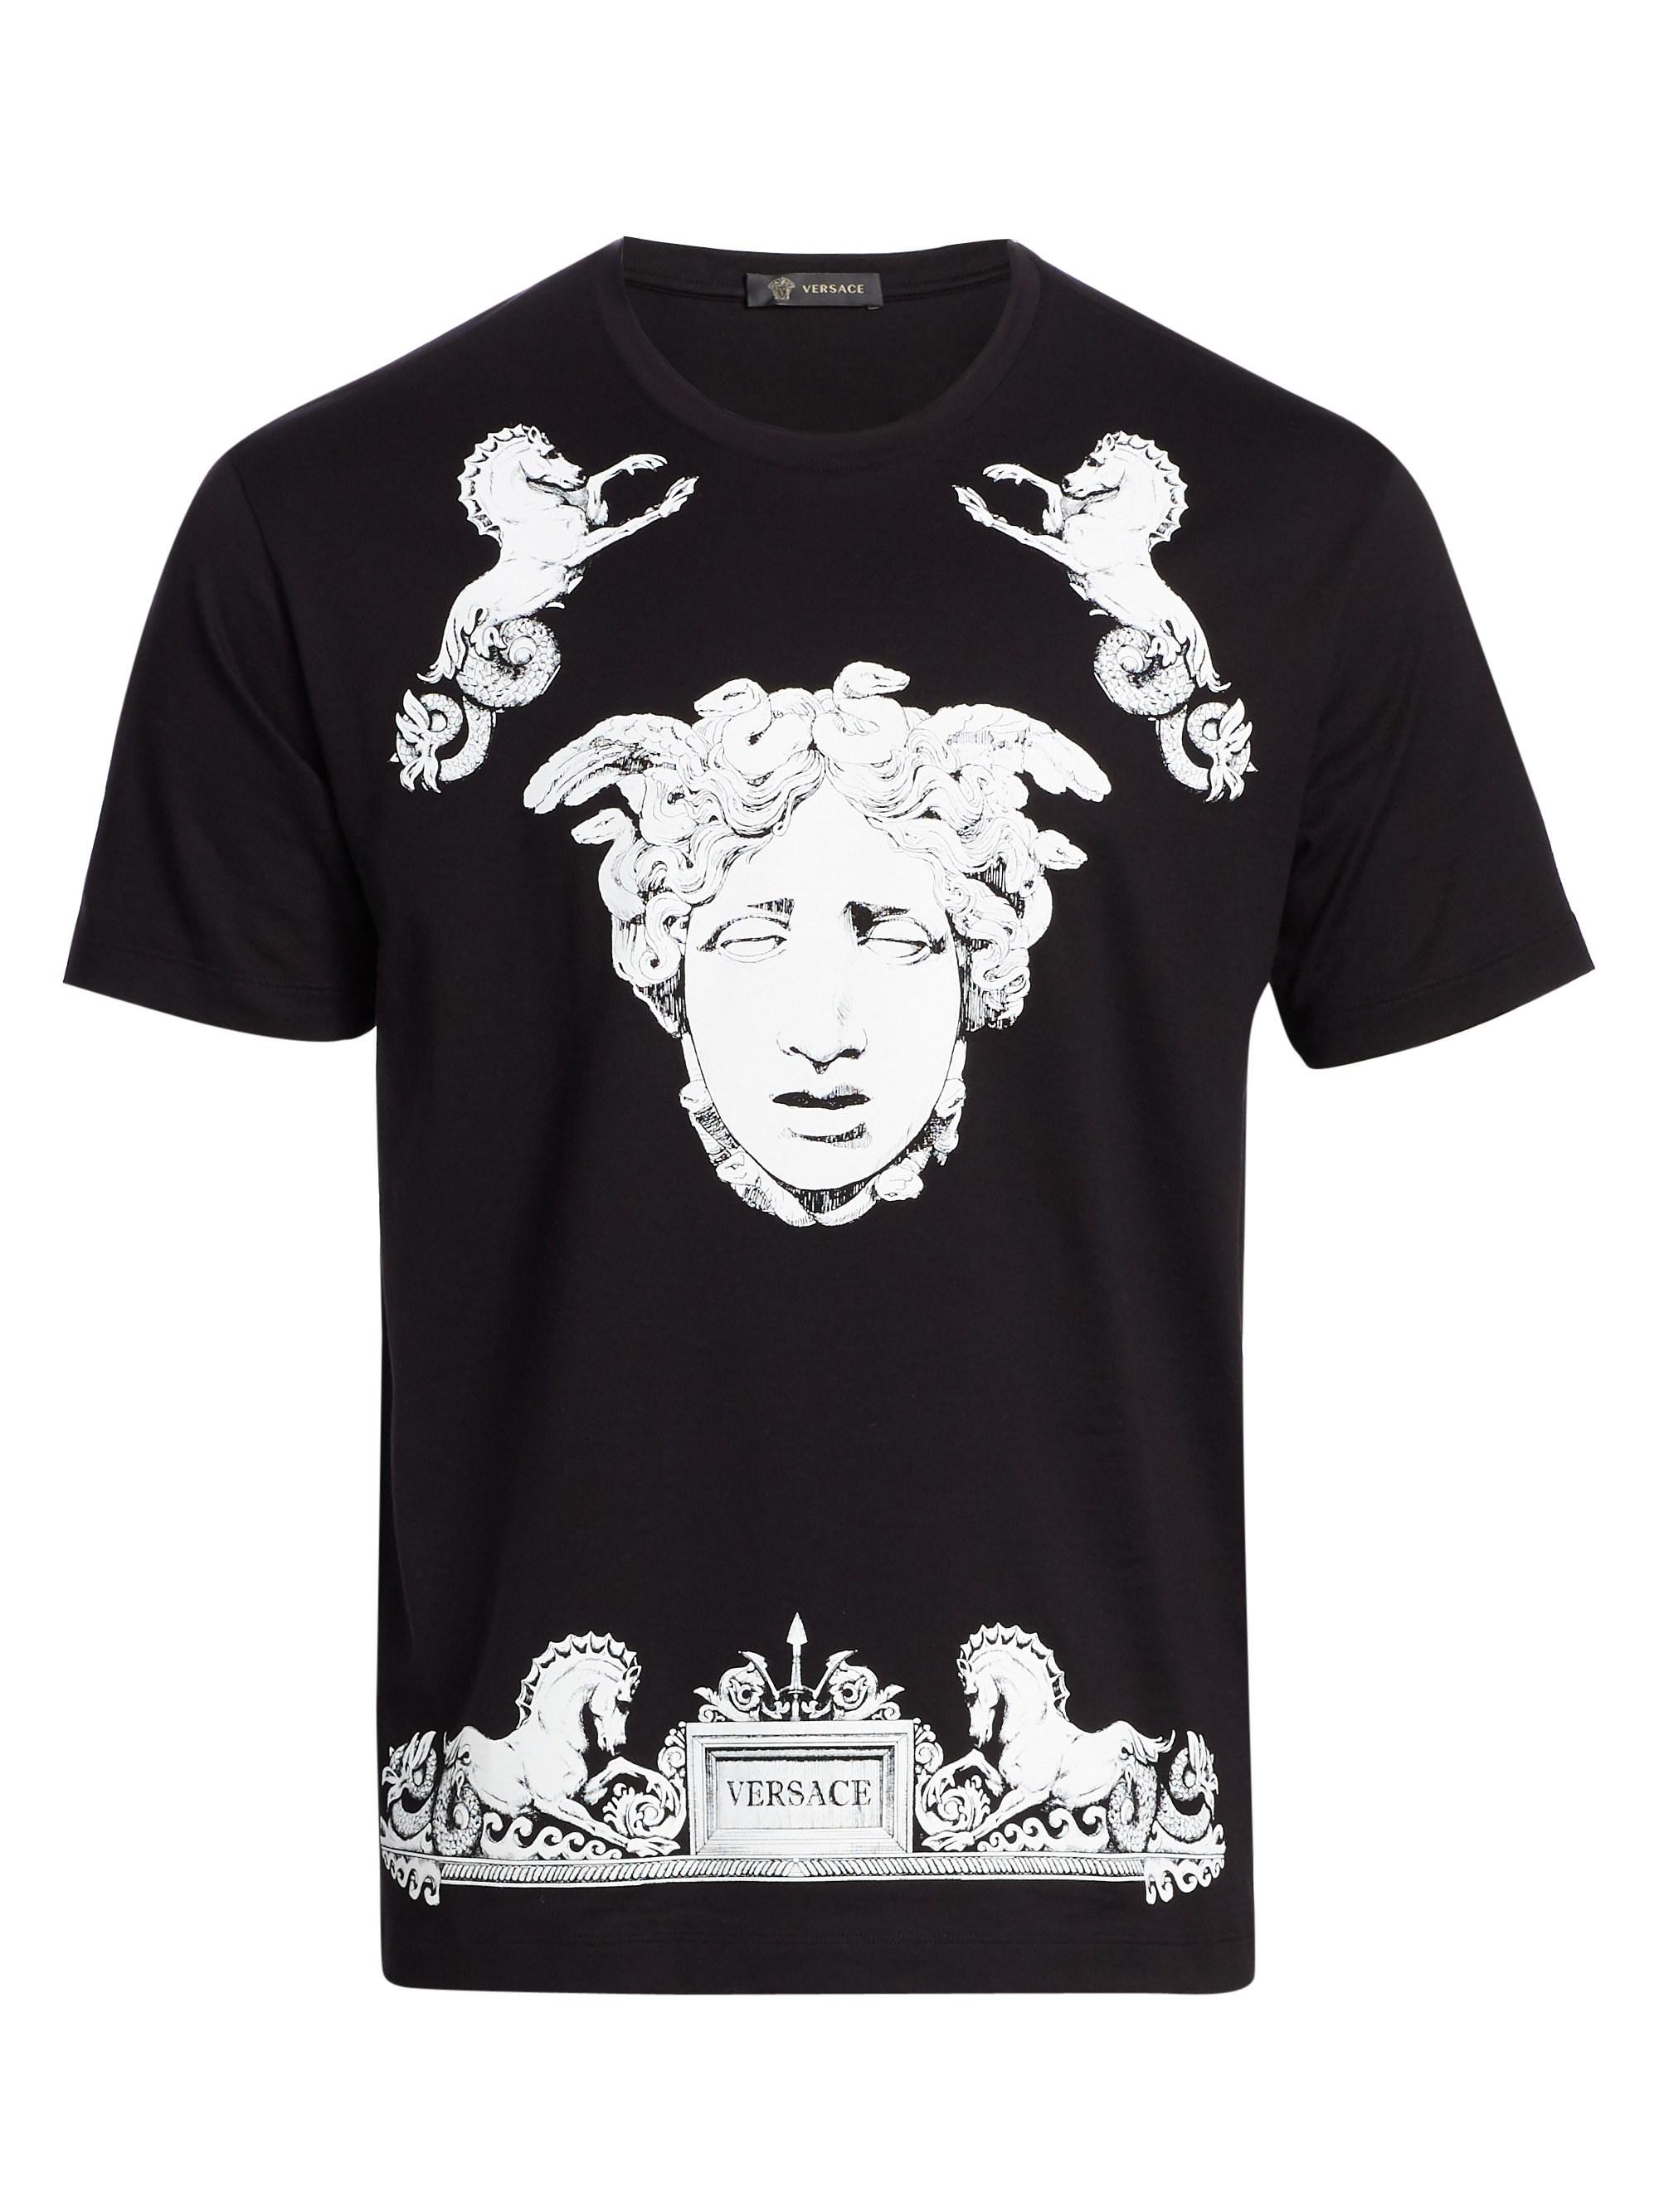 Versace Medusa Face T-shirt in Black for Men - Lyst